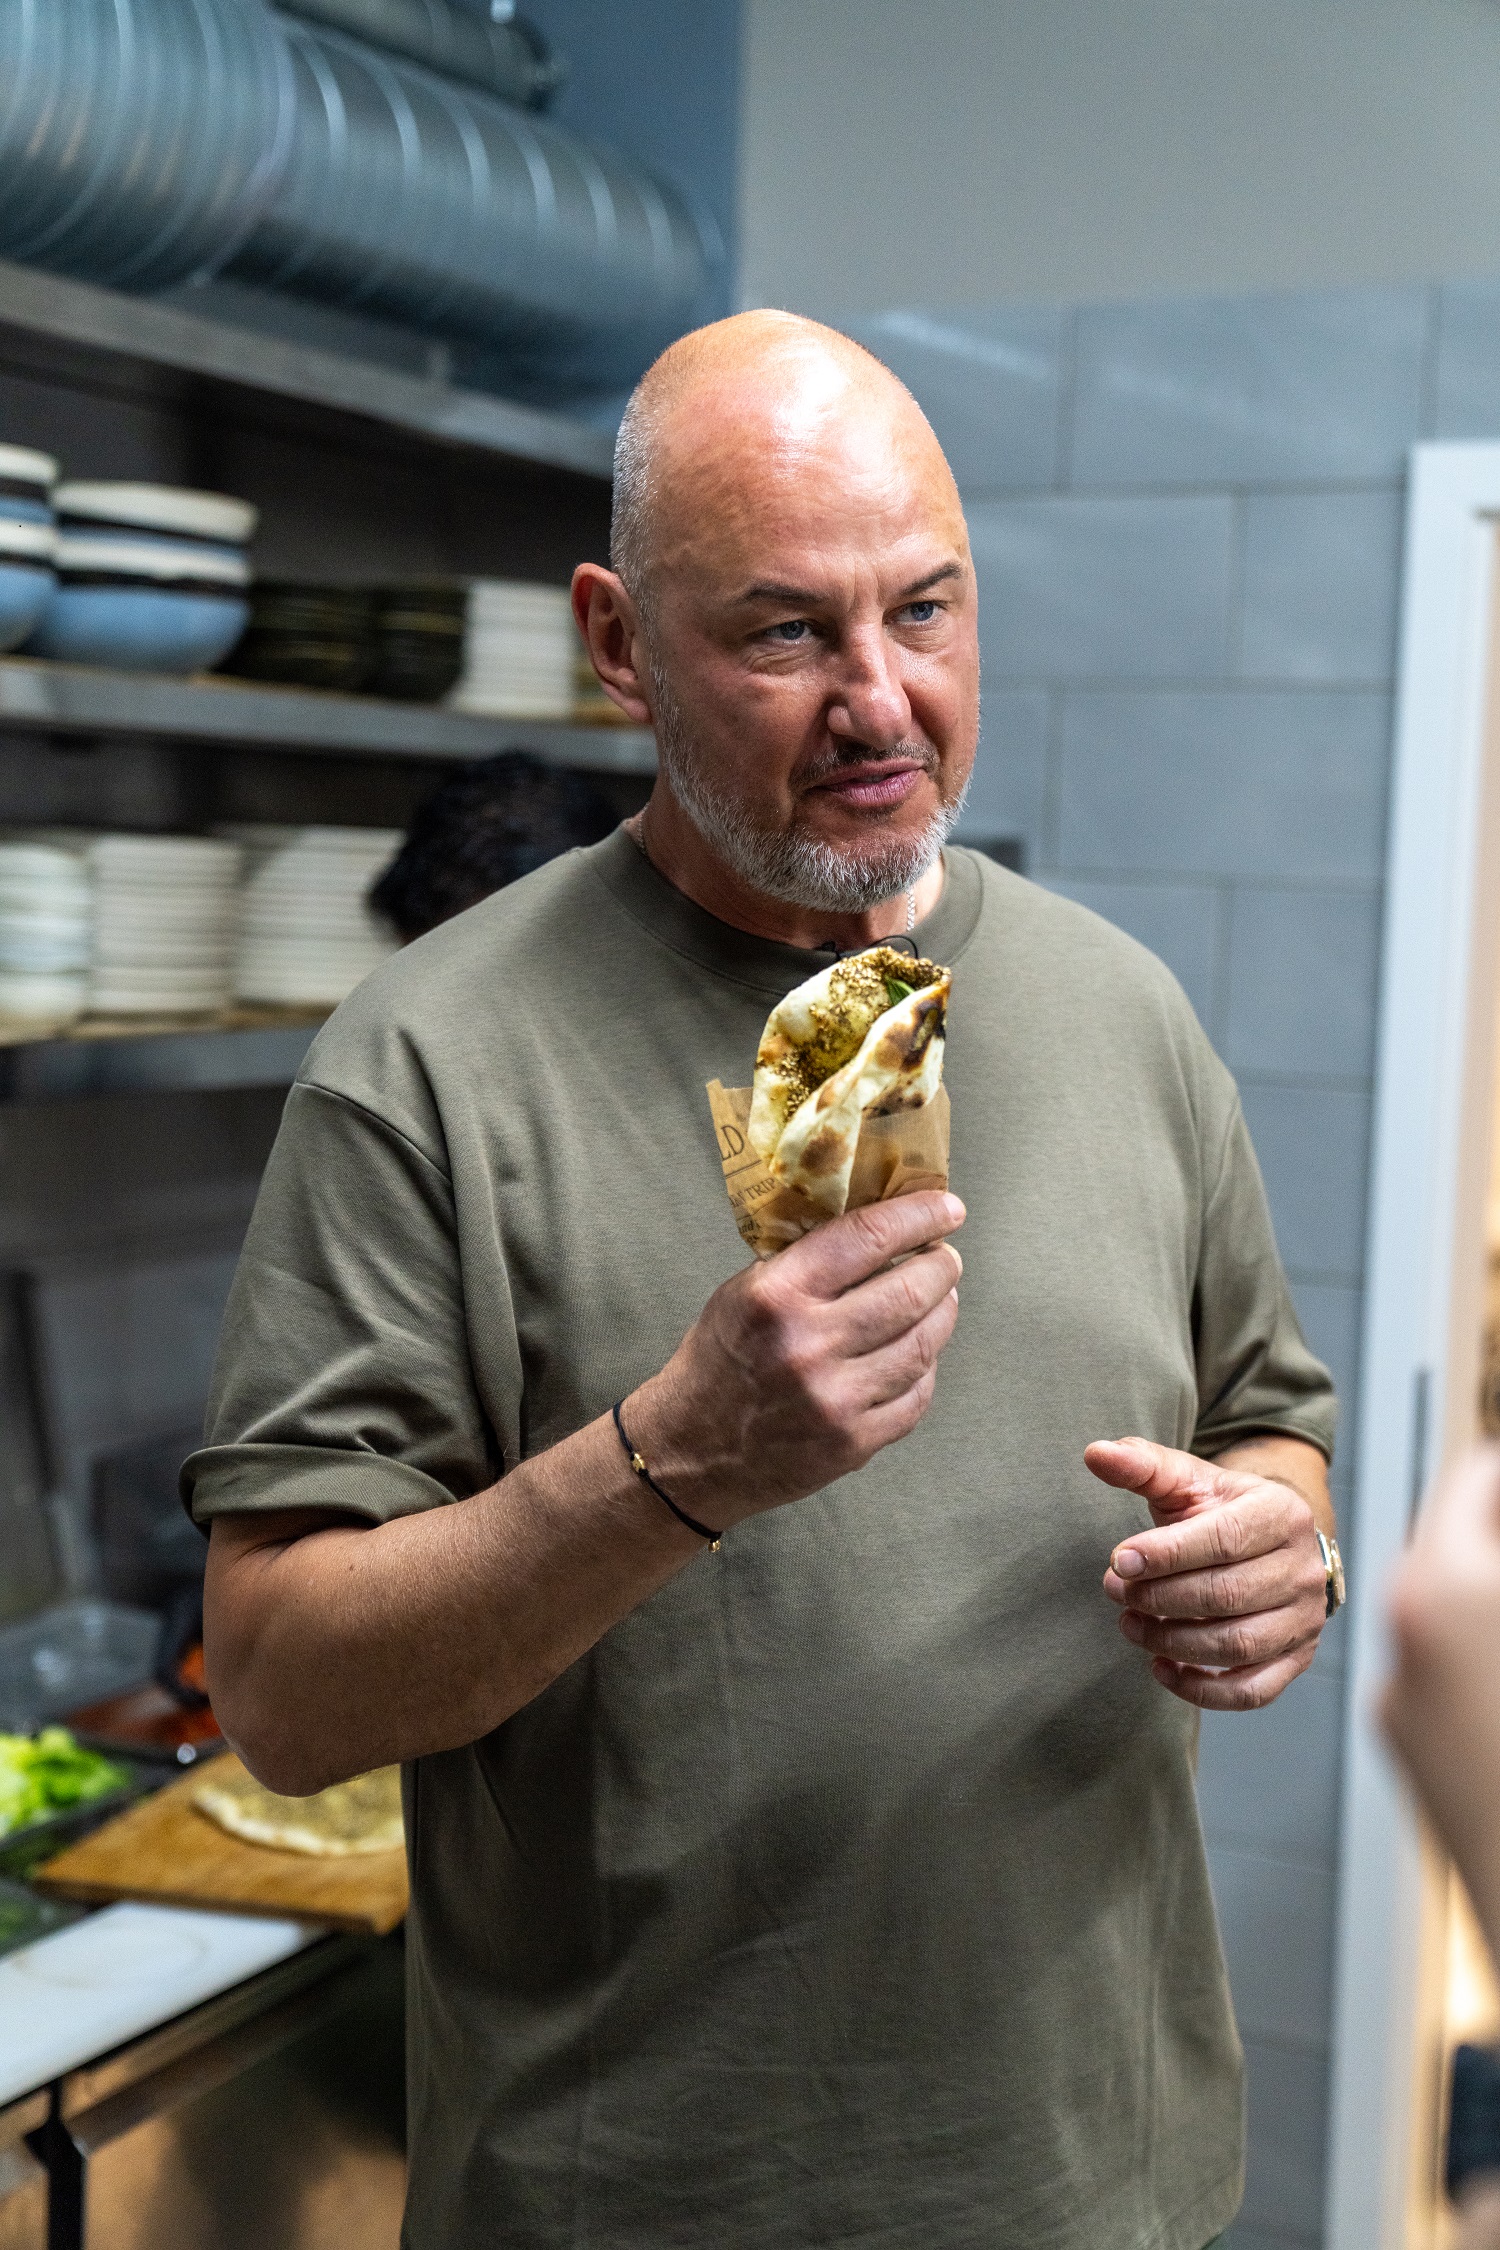 Sternekoch Frank Rosin steht in der Küche des Restaurants "M'Oregano" und hält Man'oushe in der Hand, die er gerade zusammen mit Mo zubereitet hat.